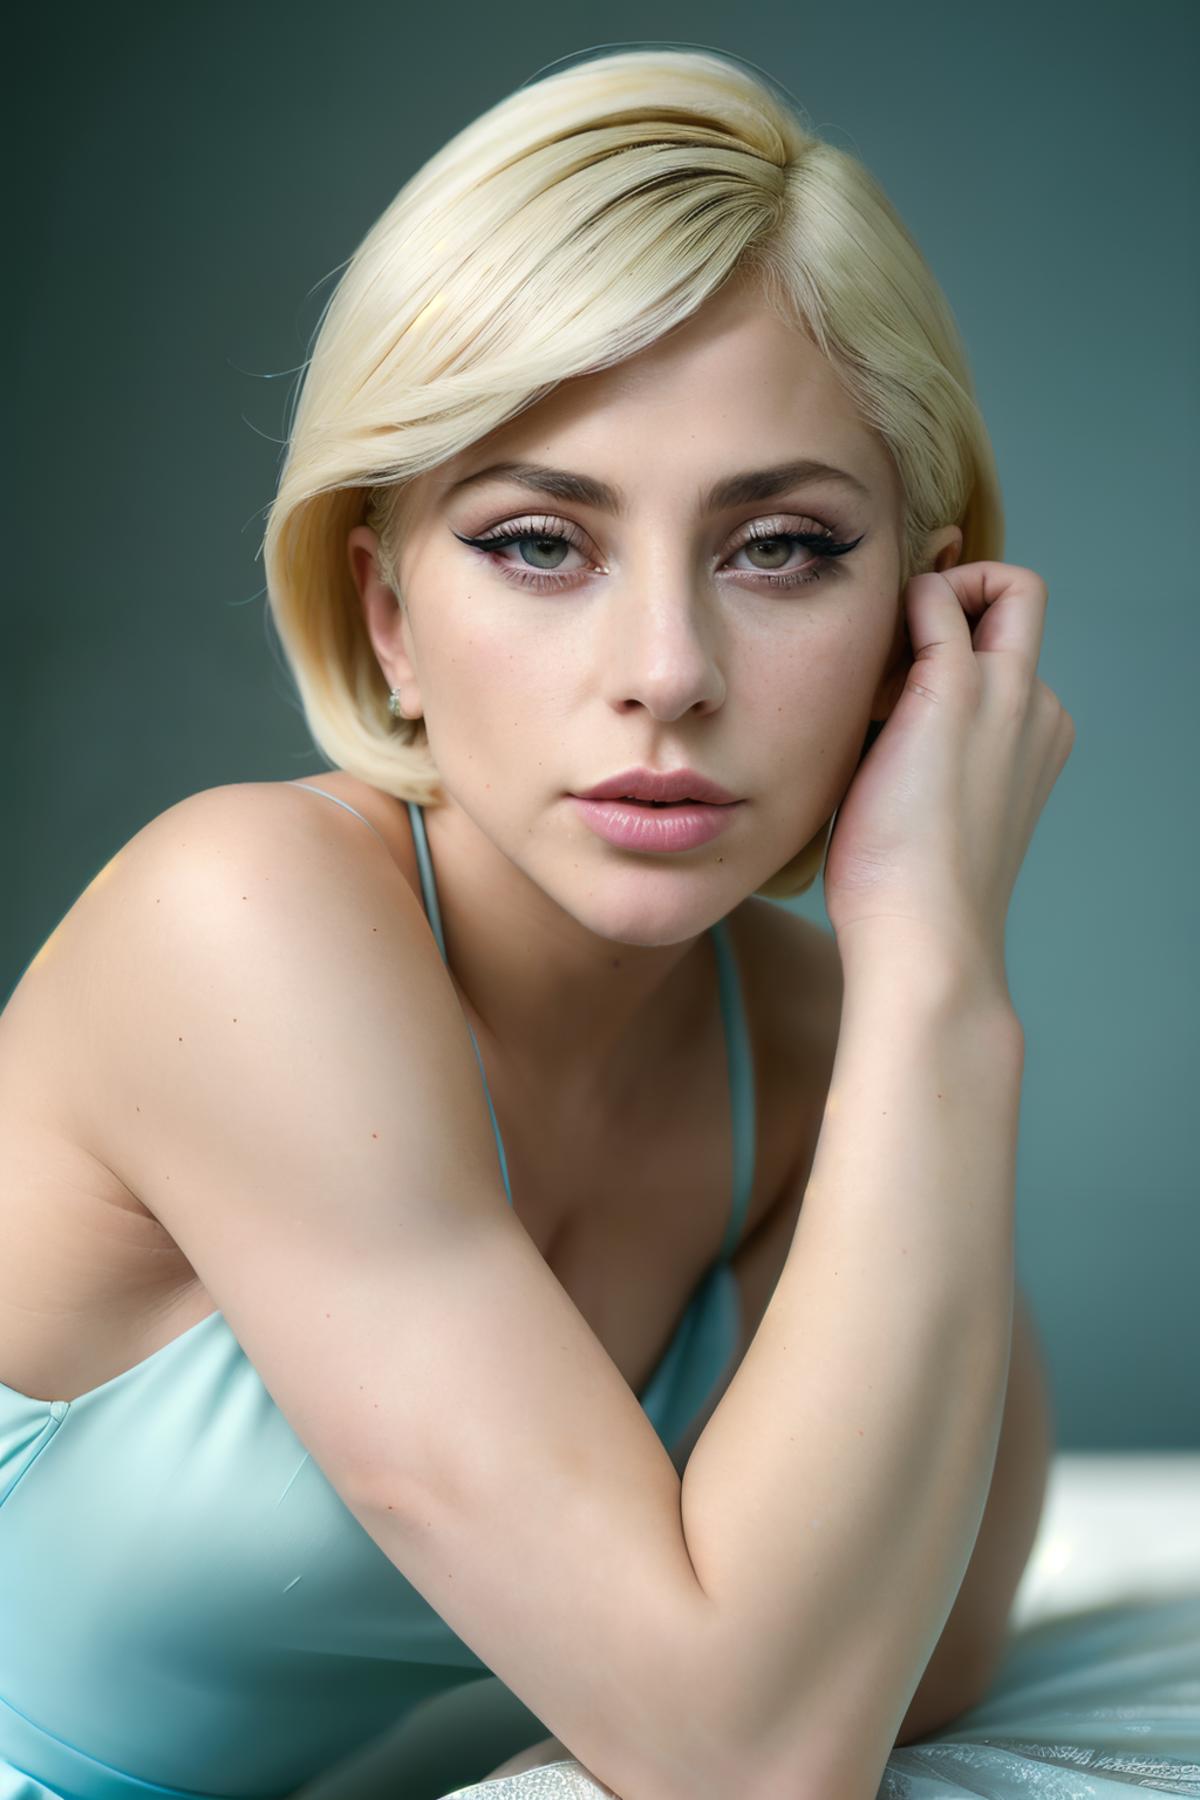 Lady Gaga image by frankyfrank2k